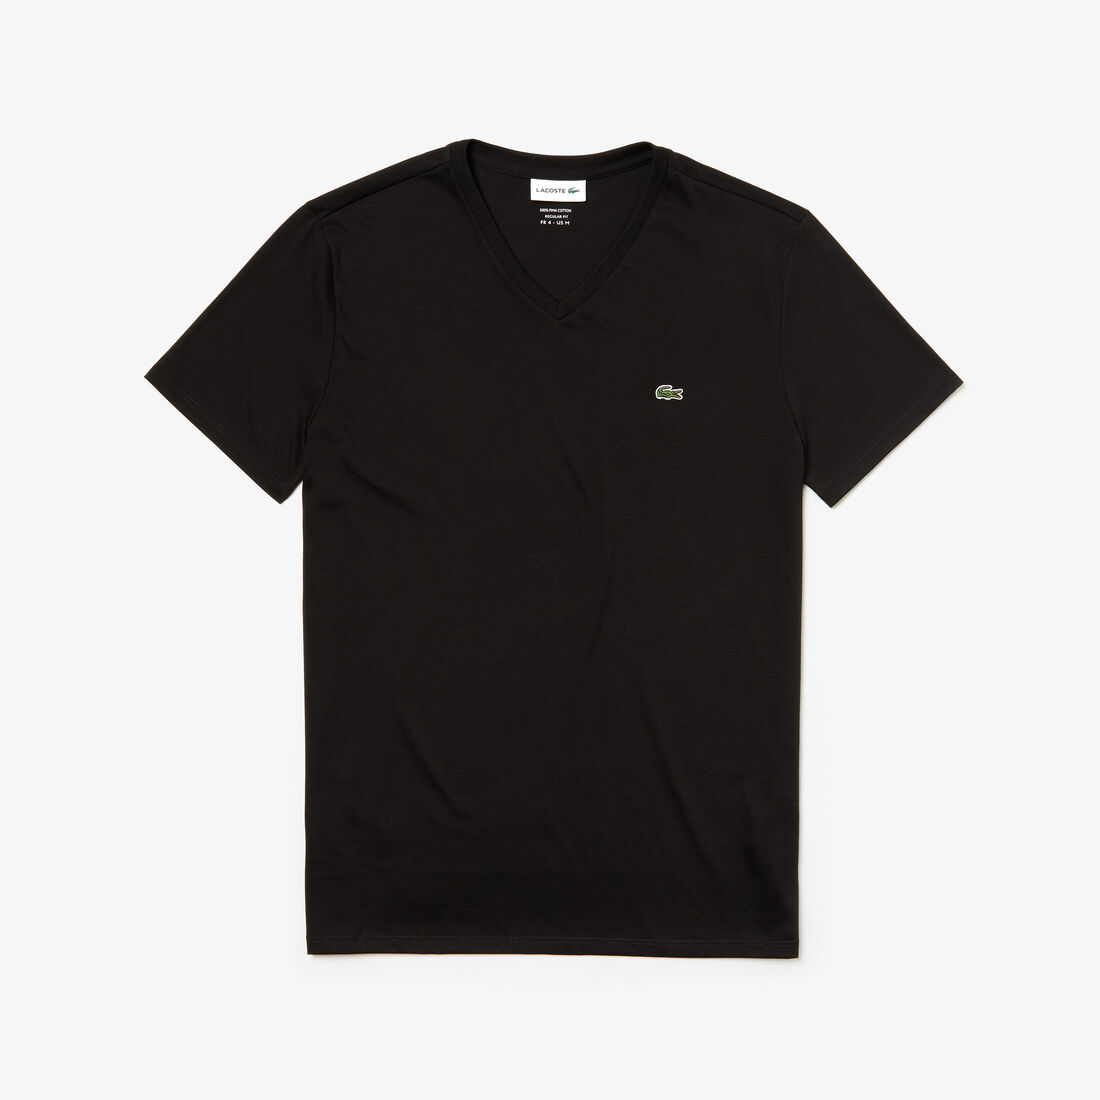 Lacoste - Pima Cotton Jersey T-Shirt, V-Neck - Black